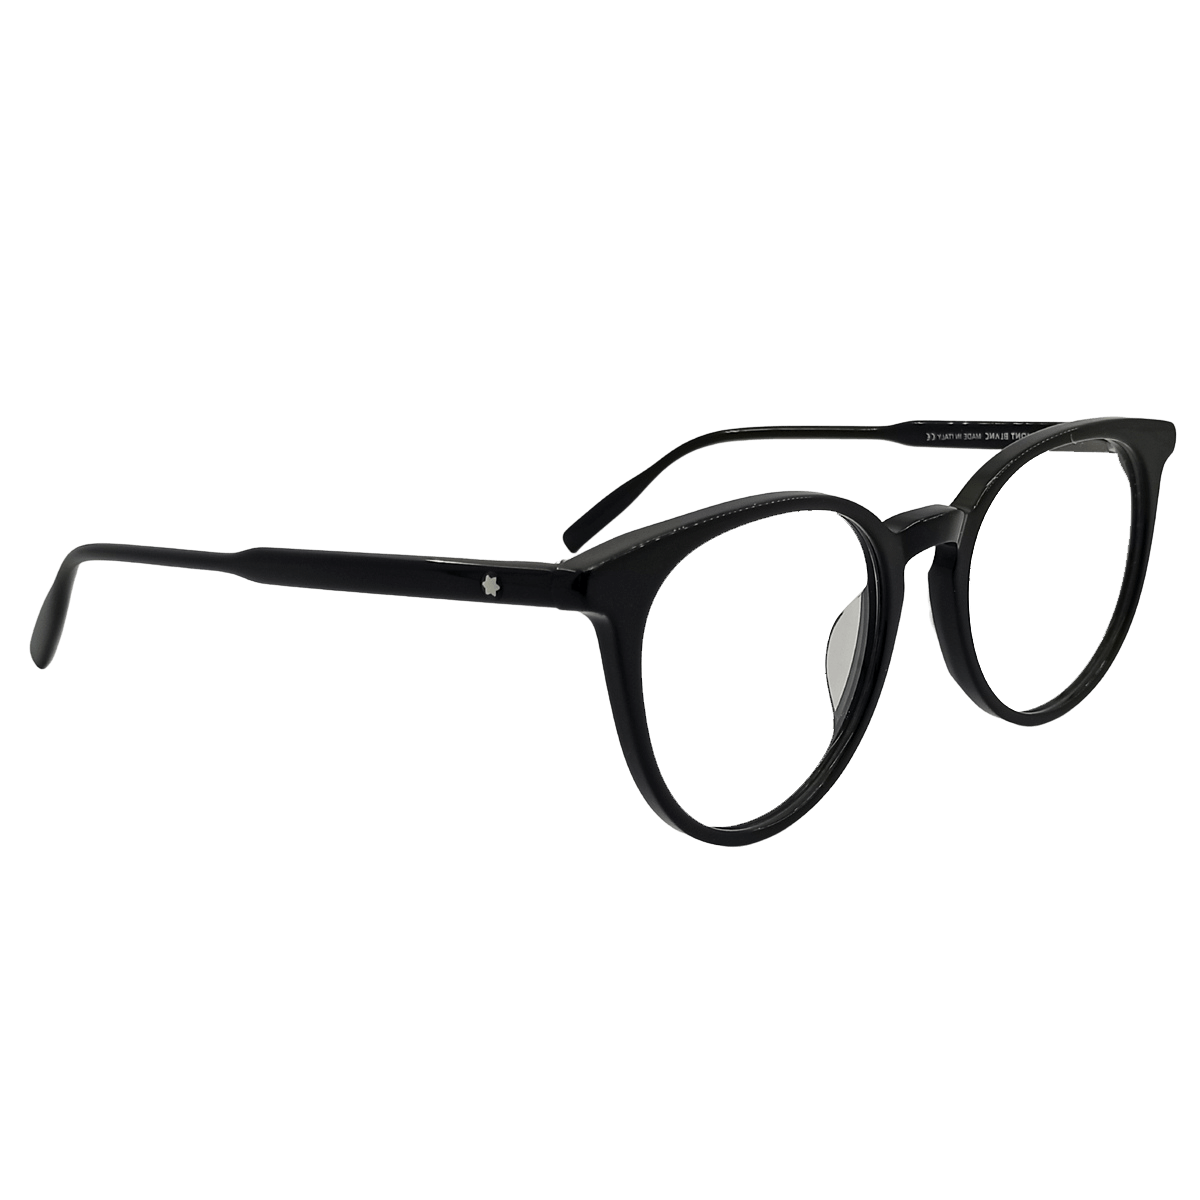 Buy Authentic Executive Quality Montblanc Eyeglasses bd | Nine Optic